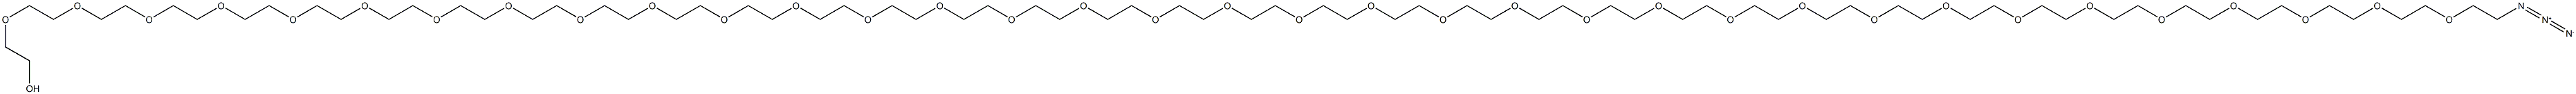 Azide-PEG12-alcohol structure